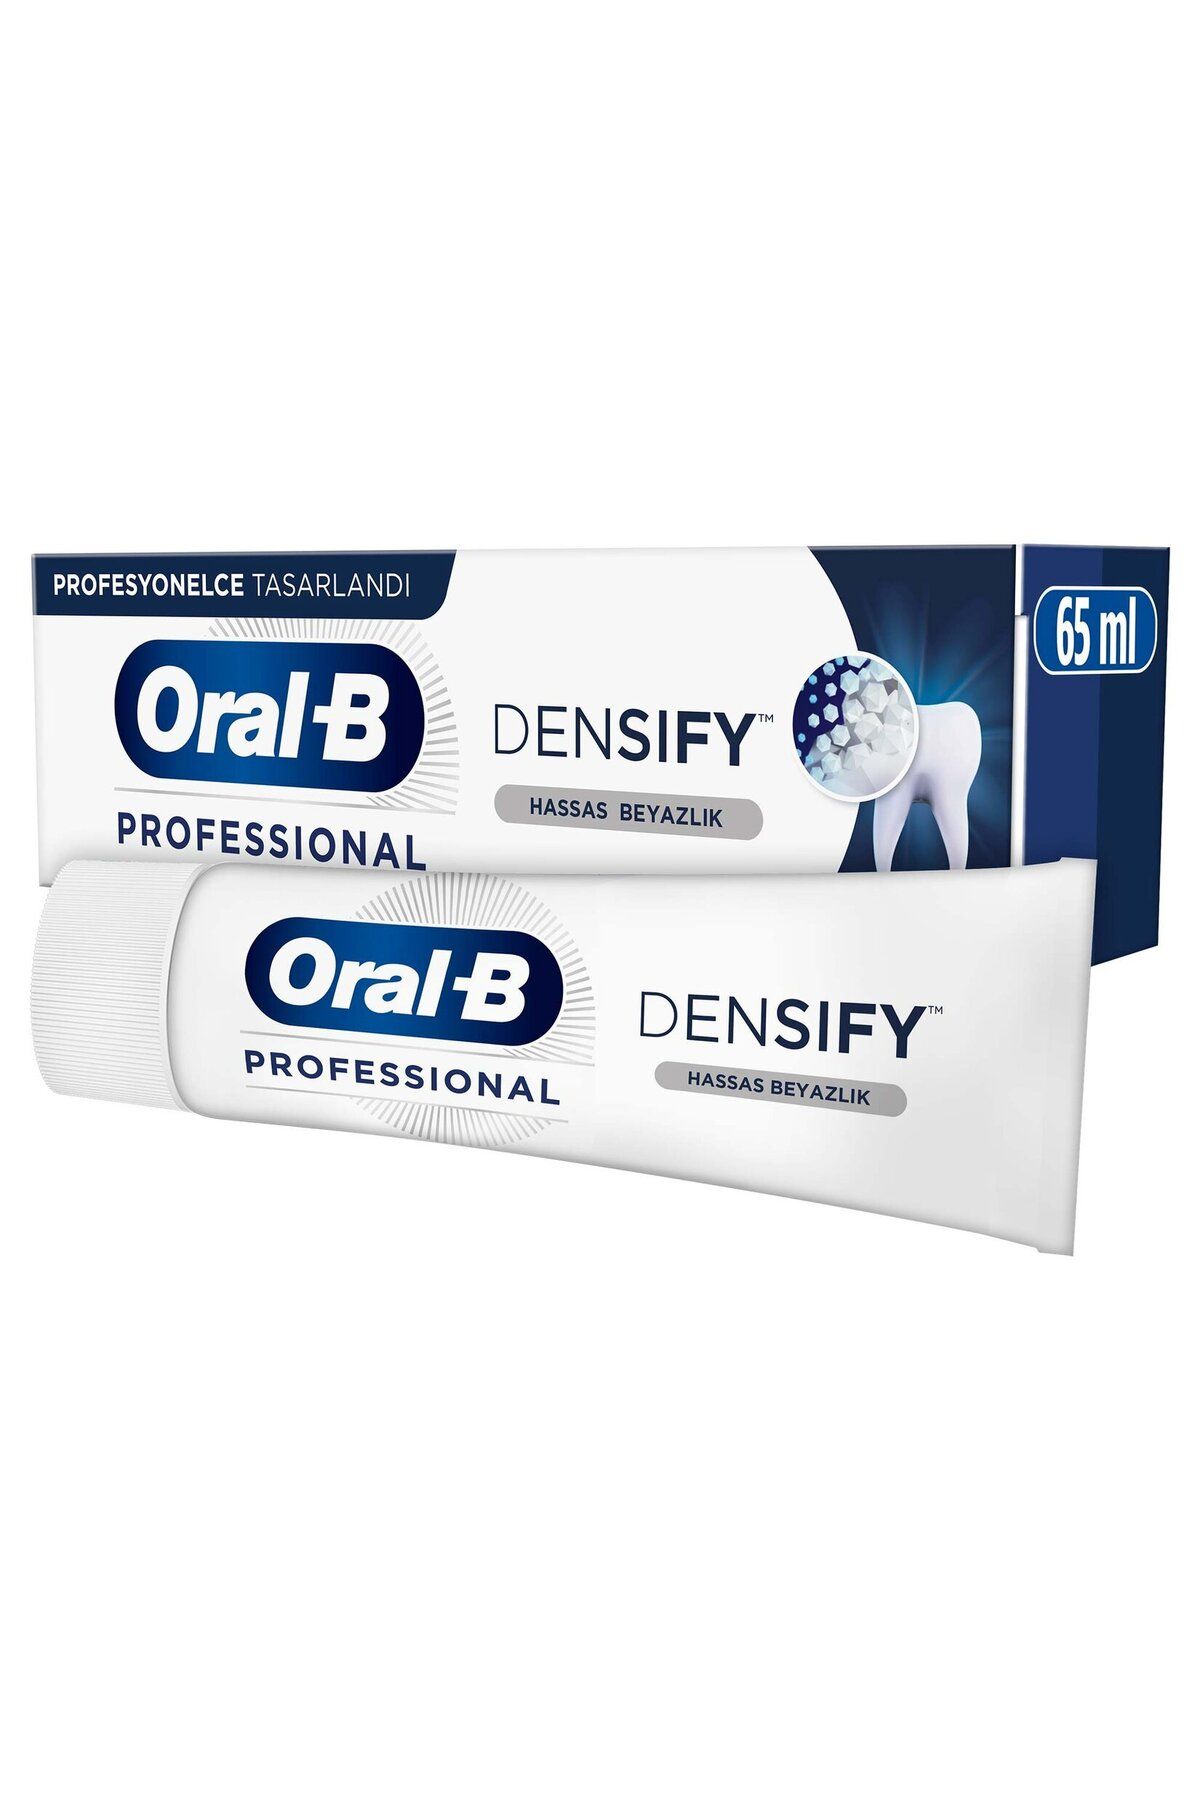 Oral-B Pro Densıfy Hassas Beyazlık Diş Macunu 65ml